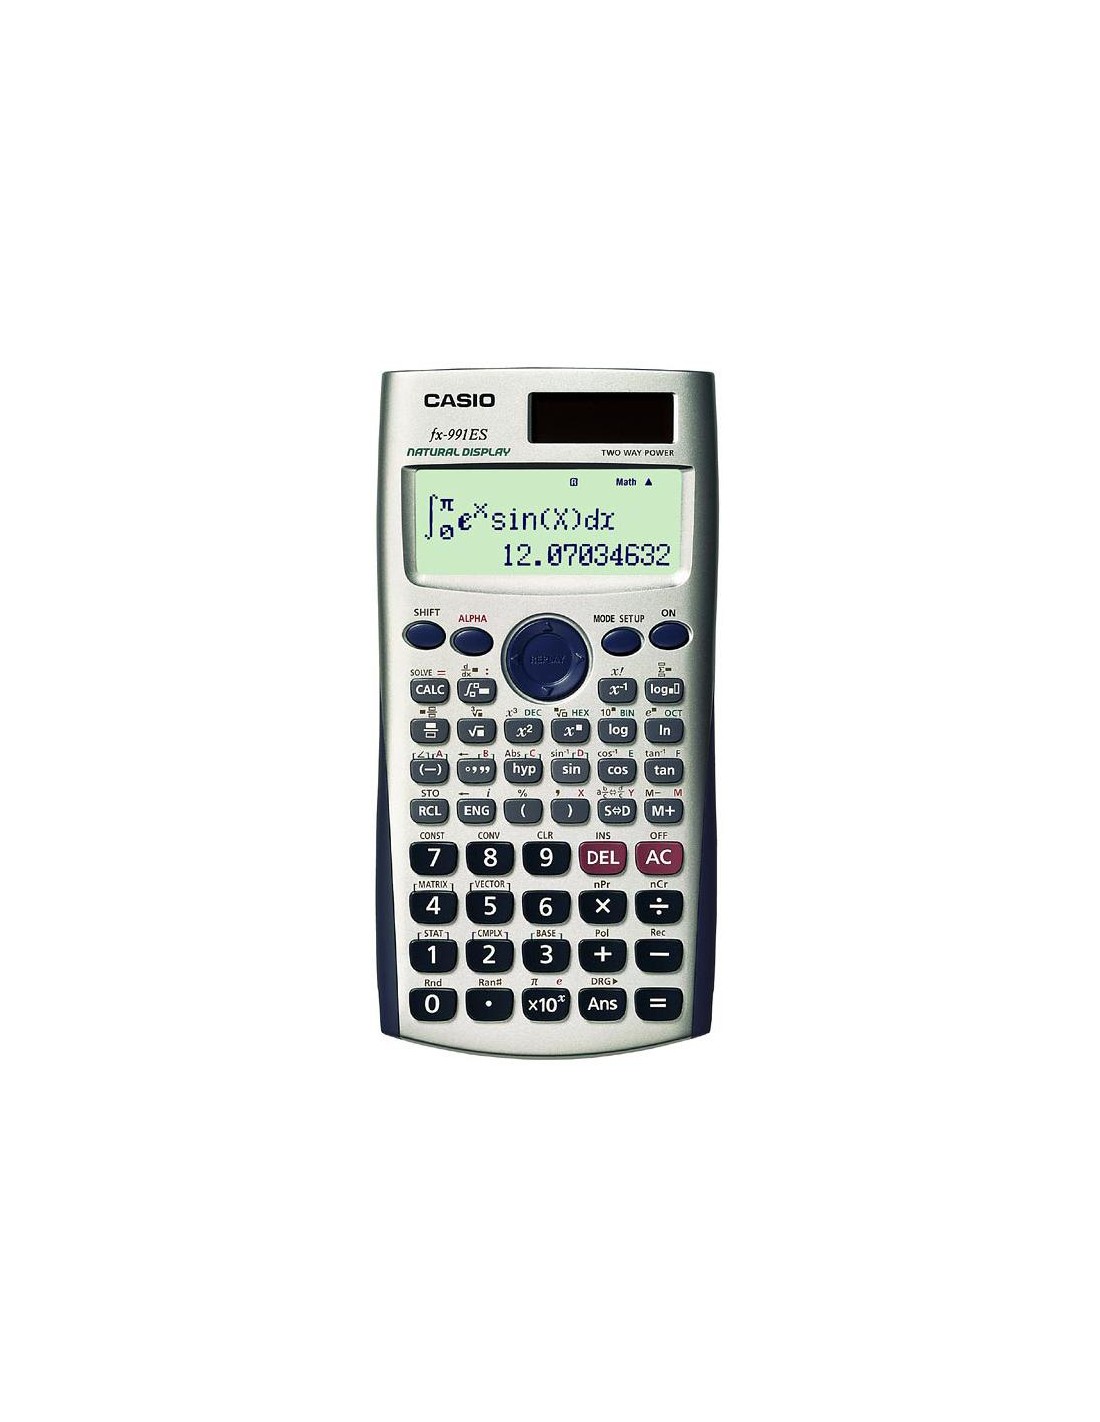 Casio FX991ES calcolatrice Tasca Calcolatrice scientifica Bianco i...